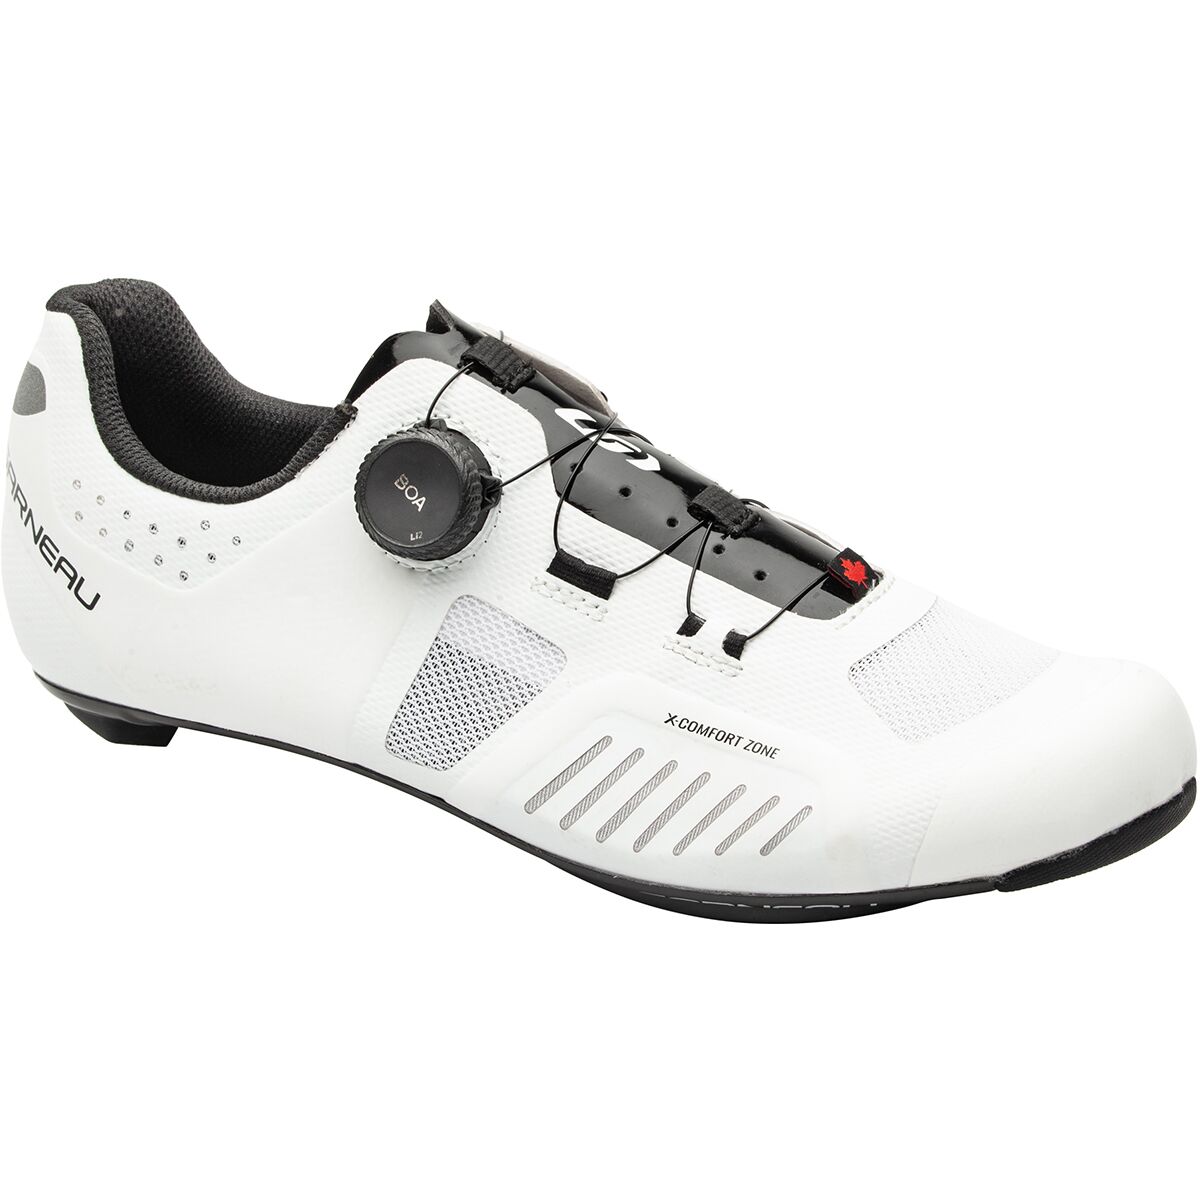 Louis Garneau Carbon XY Cycling Shoe - Men's